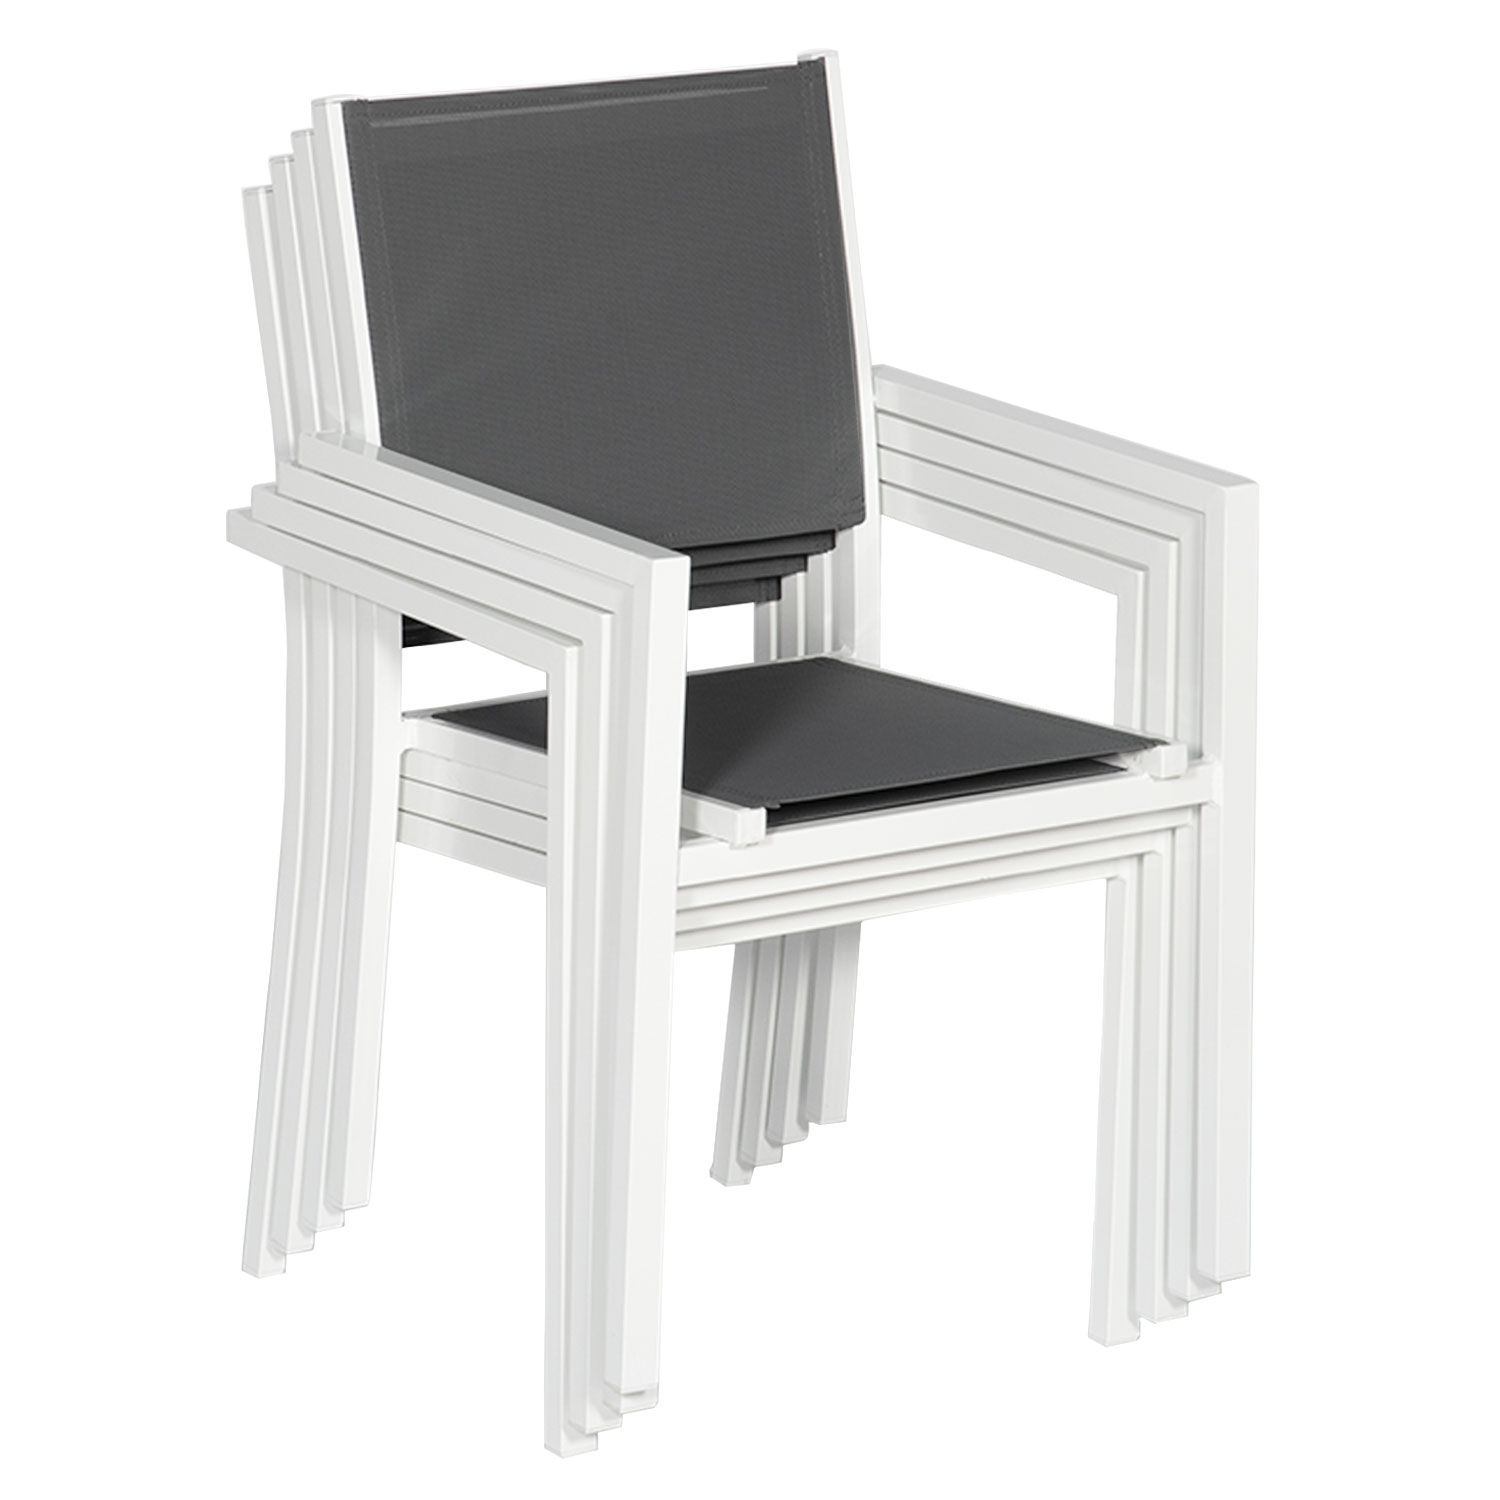 Lot de 6 chaises en aluminium blanc - textilène gris